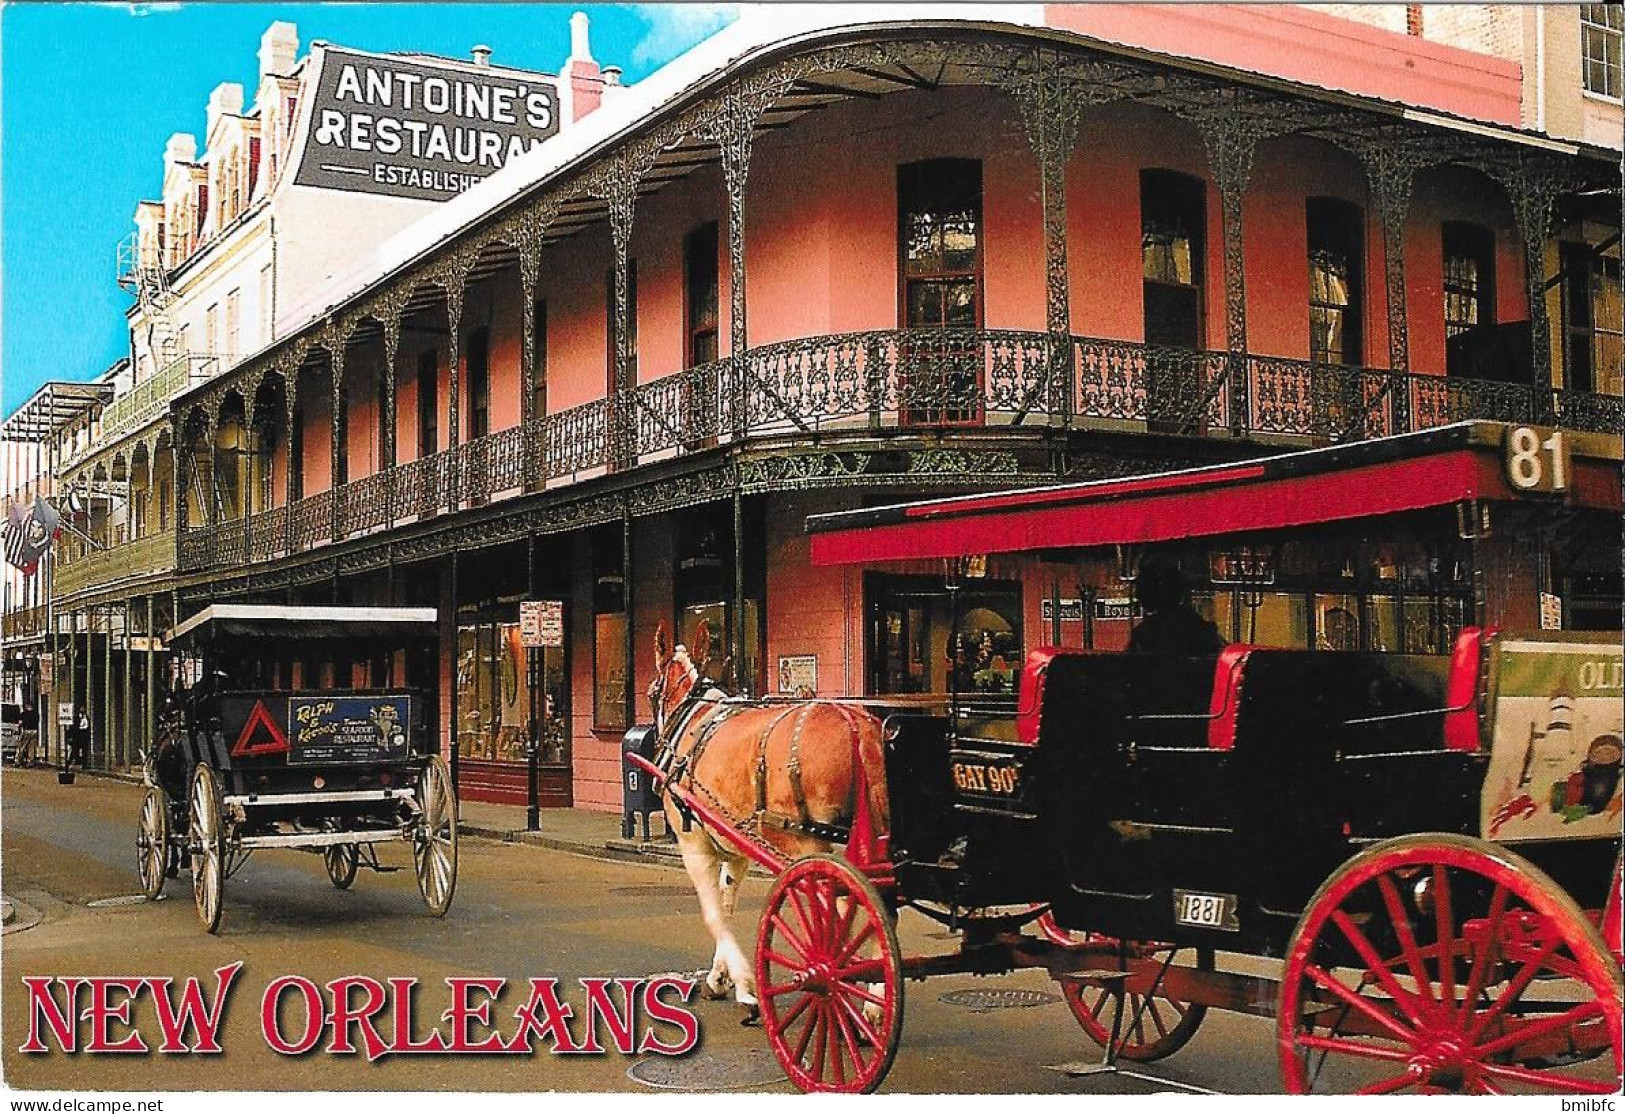 ANTOINE'S RESTAURANT - New Orleans - Louisiana - New Orleans